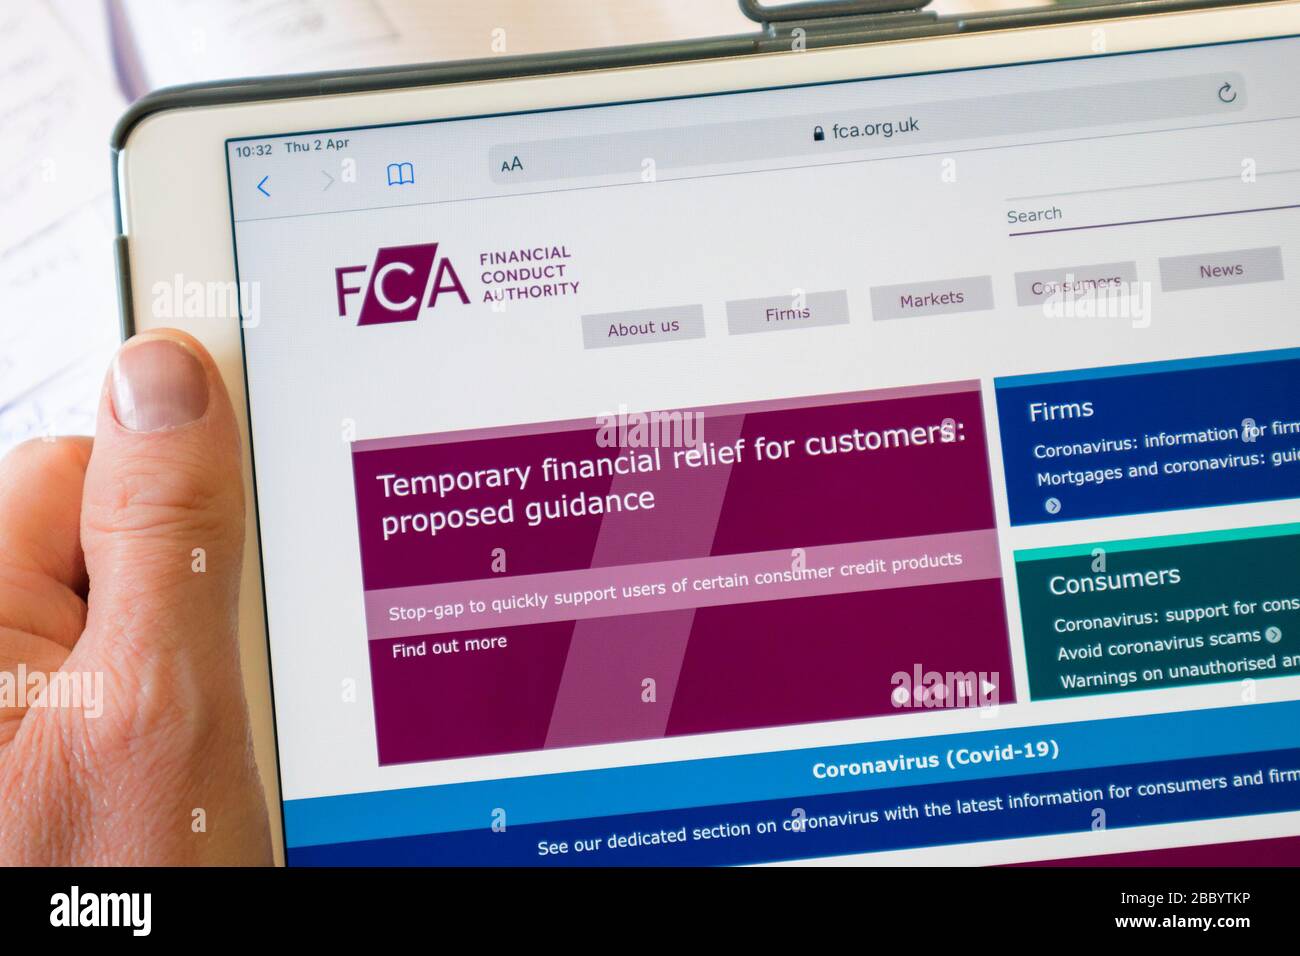 sitio web de fca financial conduct authority visto en un ipad, reino unido Foto de stock